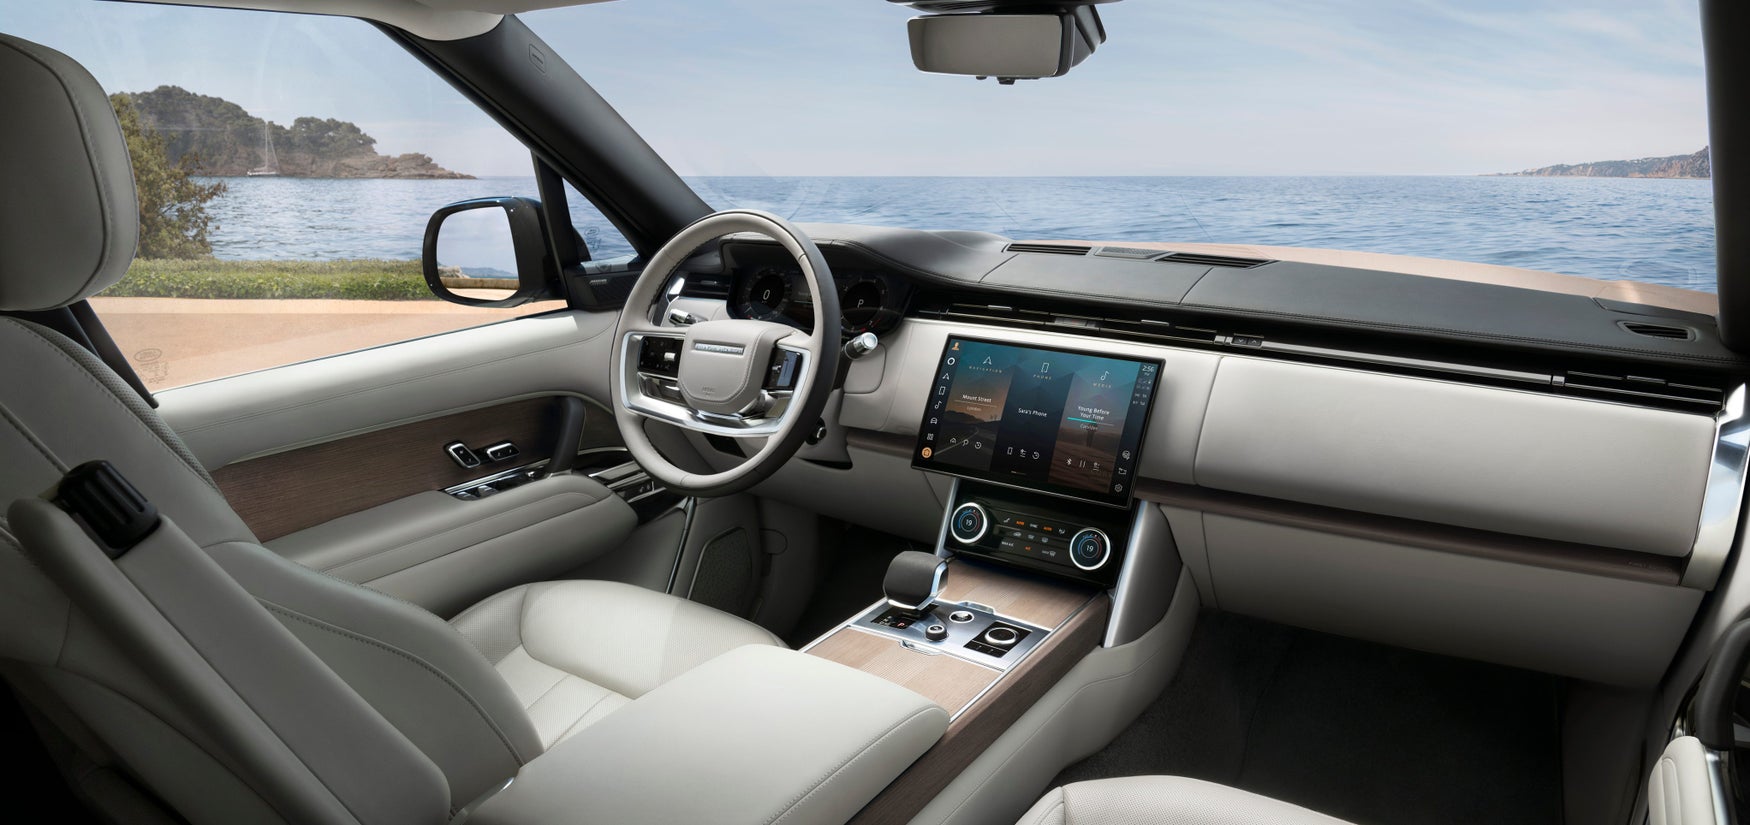 2022 Range Rover dashboard